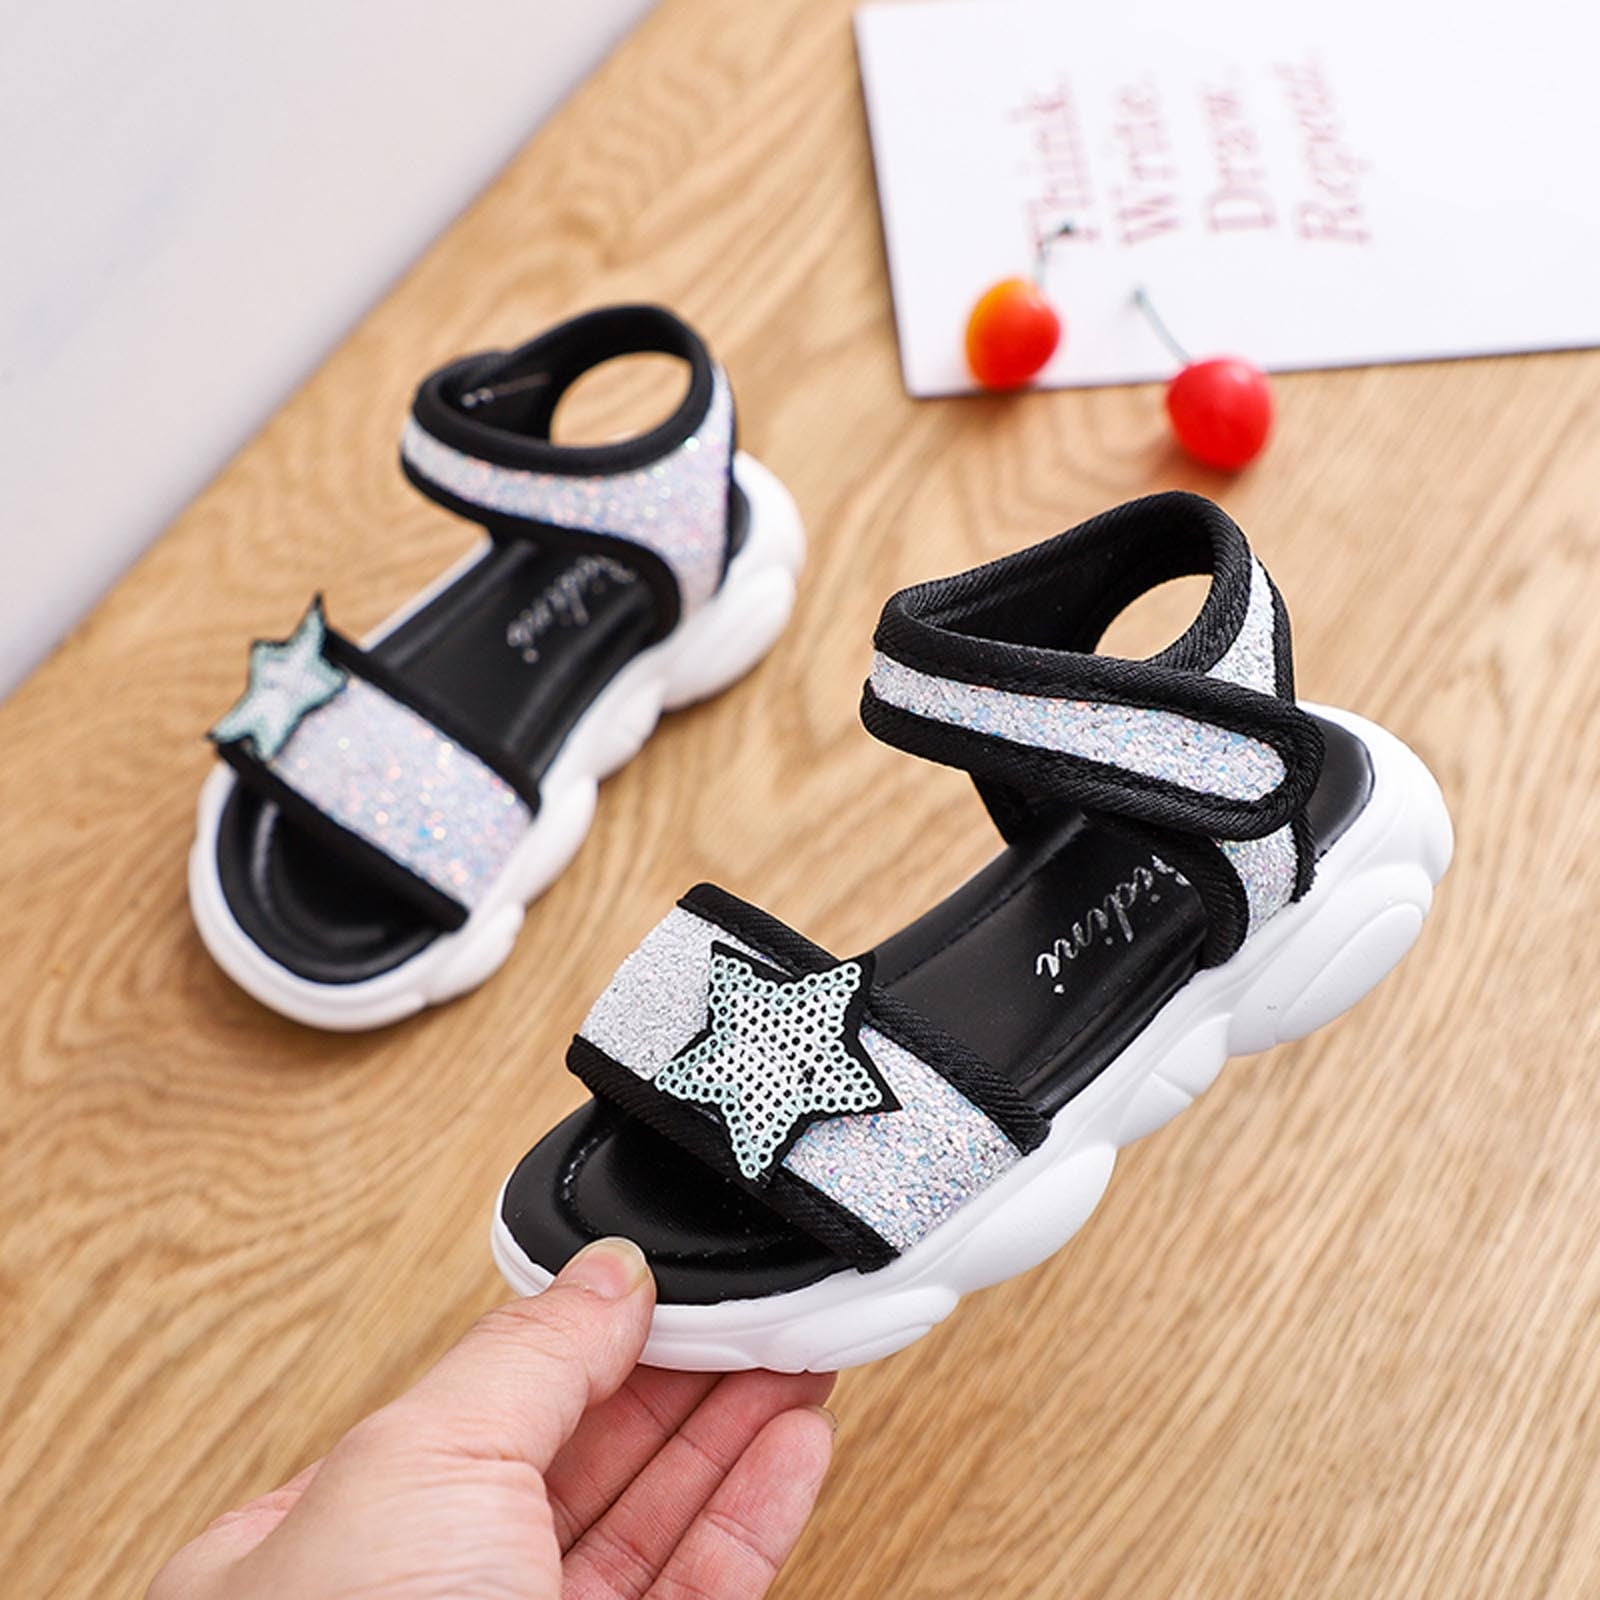 Geox® WROOM: Junior Boy's Navy Sandals With Lights | Geox ® Online Store